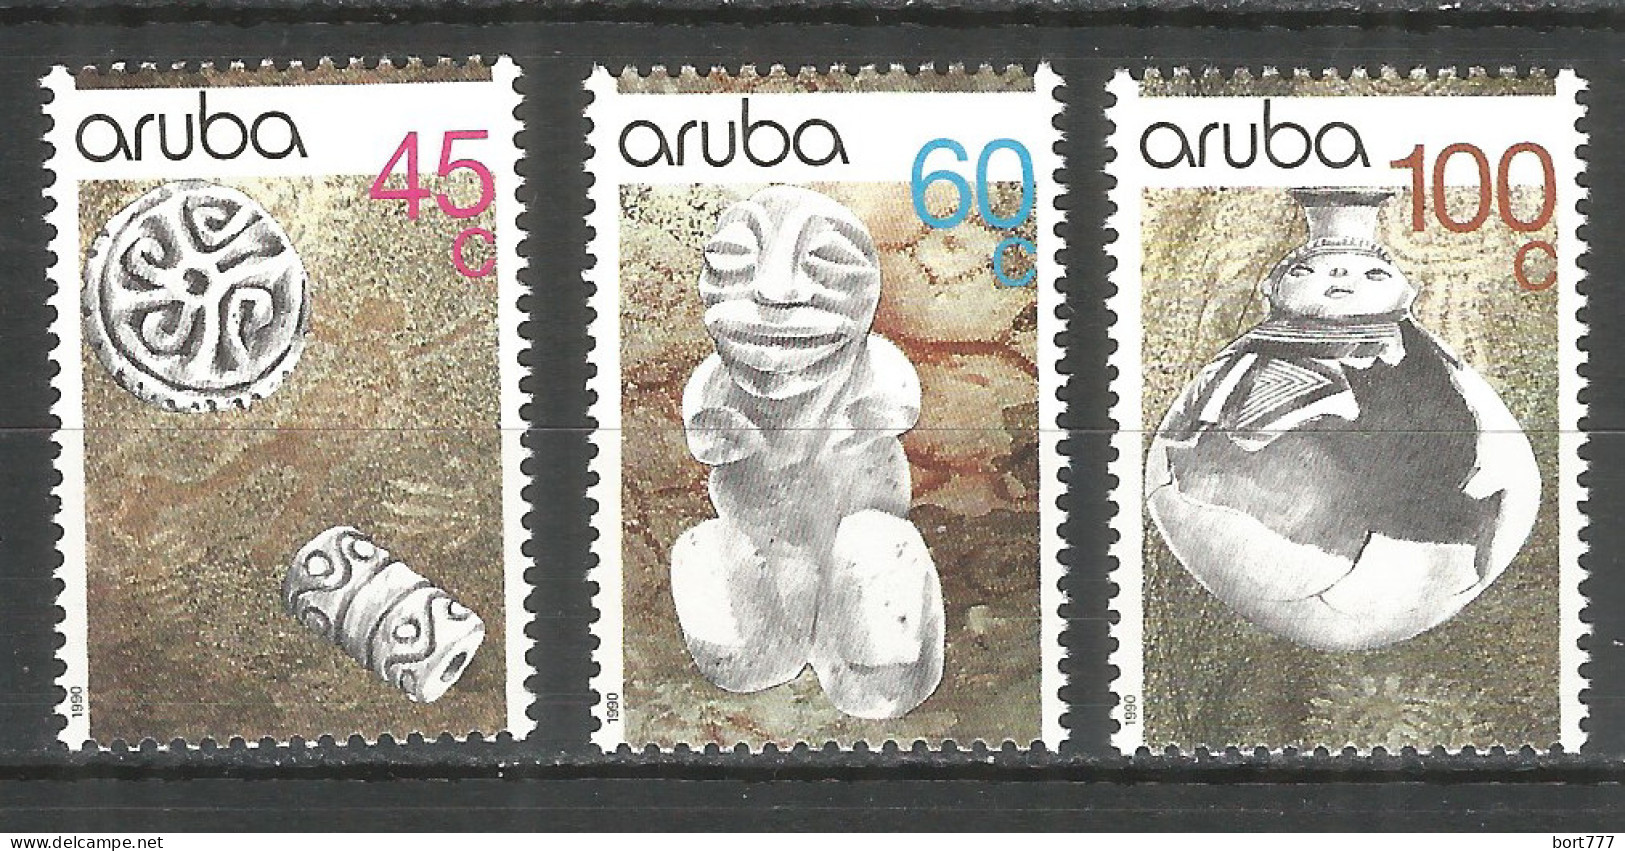 NETHERLANDS ARUBA 1990 Year , Mint Stamps MNH (**)   Michel# 80-82 - Curacao, Netherlands Antilles, Aruba